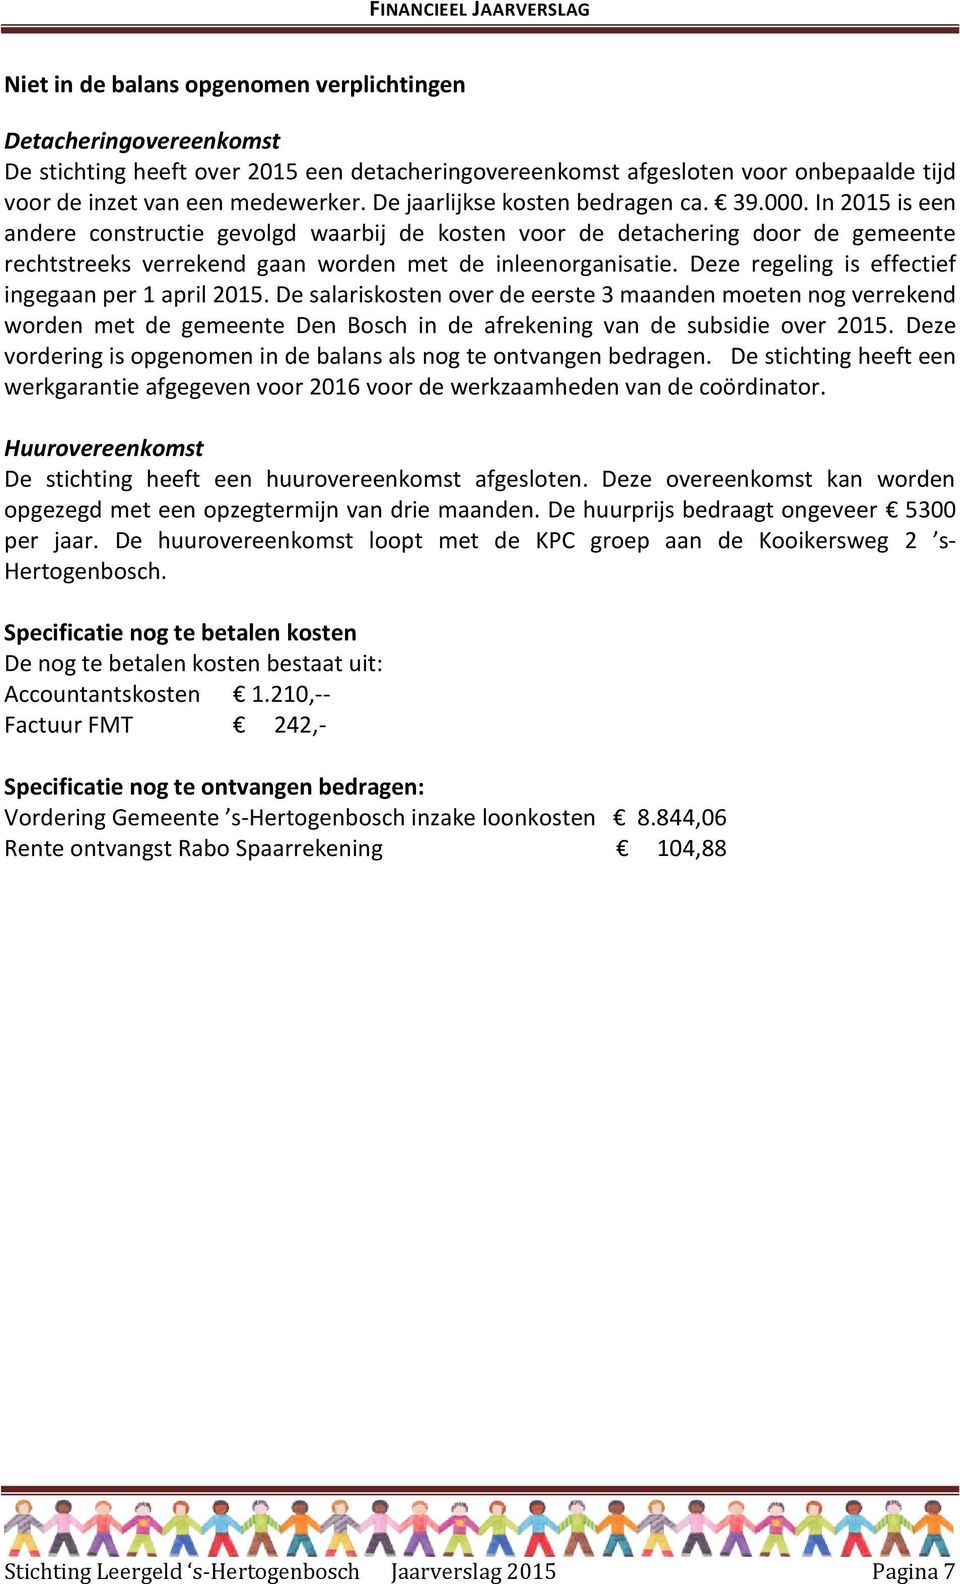 Deze regeling is effectief ingegaan per 1 april 2015. De salariskosten over de eerste 3 maanden moeten nog verrekend worden met de gemeente Den Bosch in de afrekening van de subsidie over 2015.